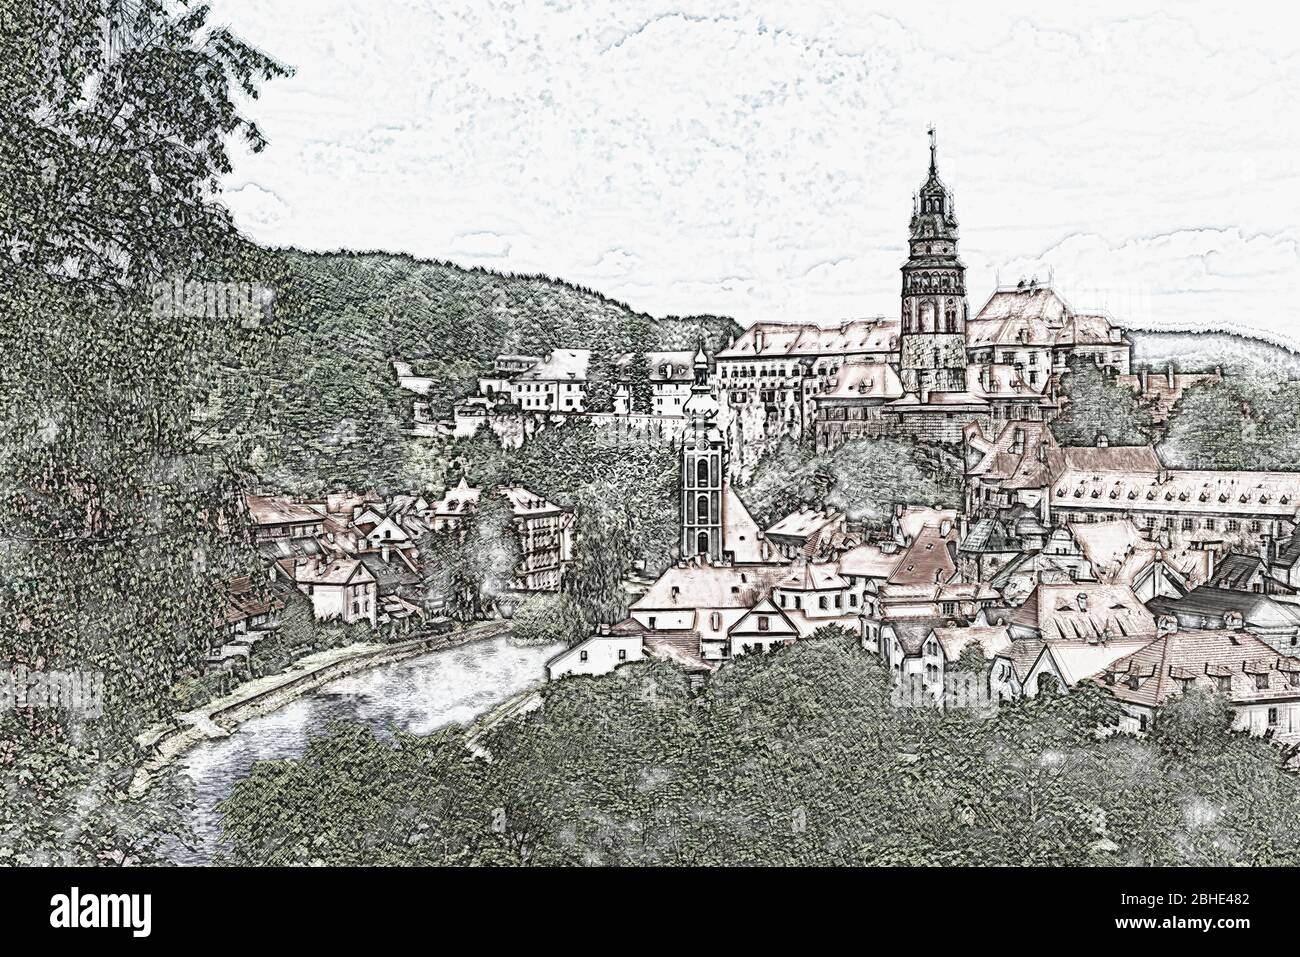 Vista della città vecchia di Chesky Krumlov, il castello Chesky Krumlov, la chiesa di San Jost e il fiume Moldava in Boemia, Repubblica Ceca, Europa Foto Stock